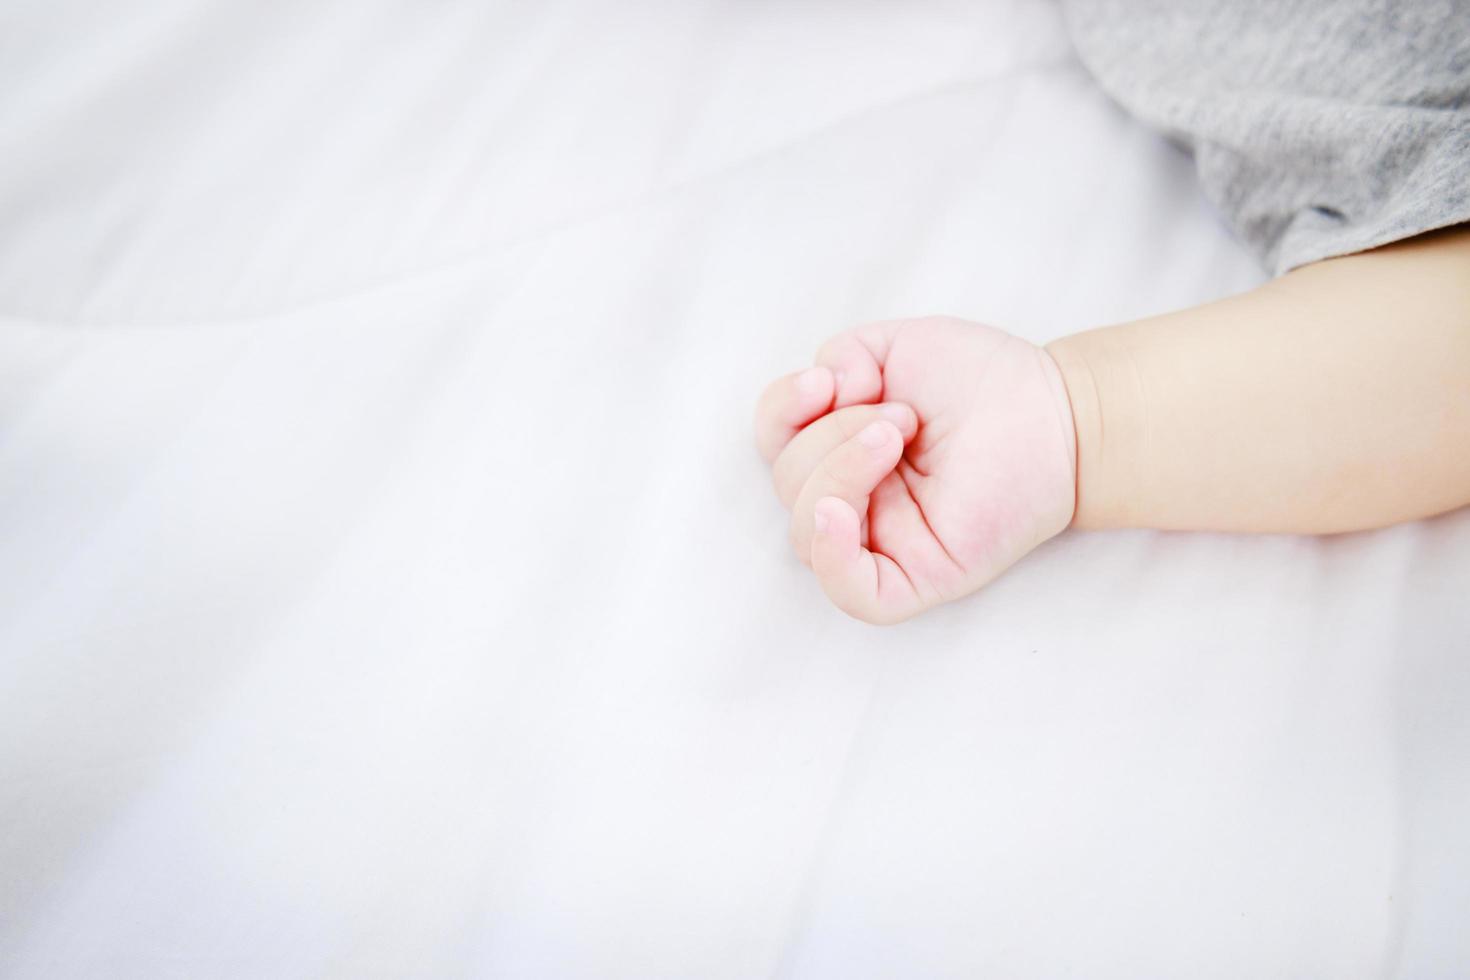 retrato de primer plano de la mano del bebé y un bebé recién nacido dormido foto